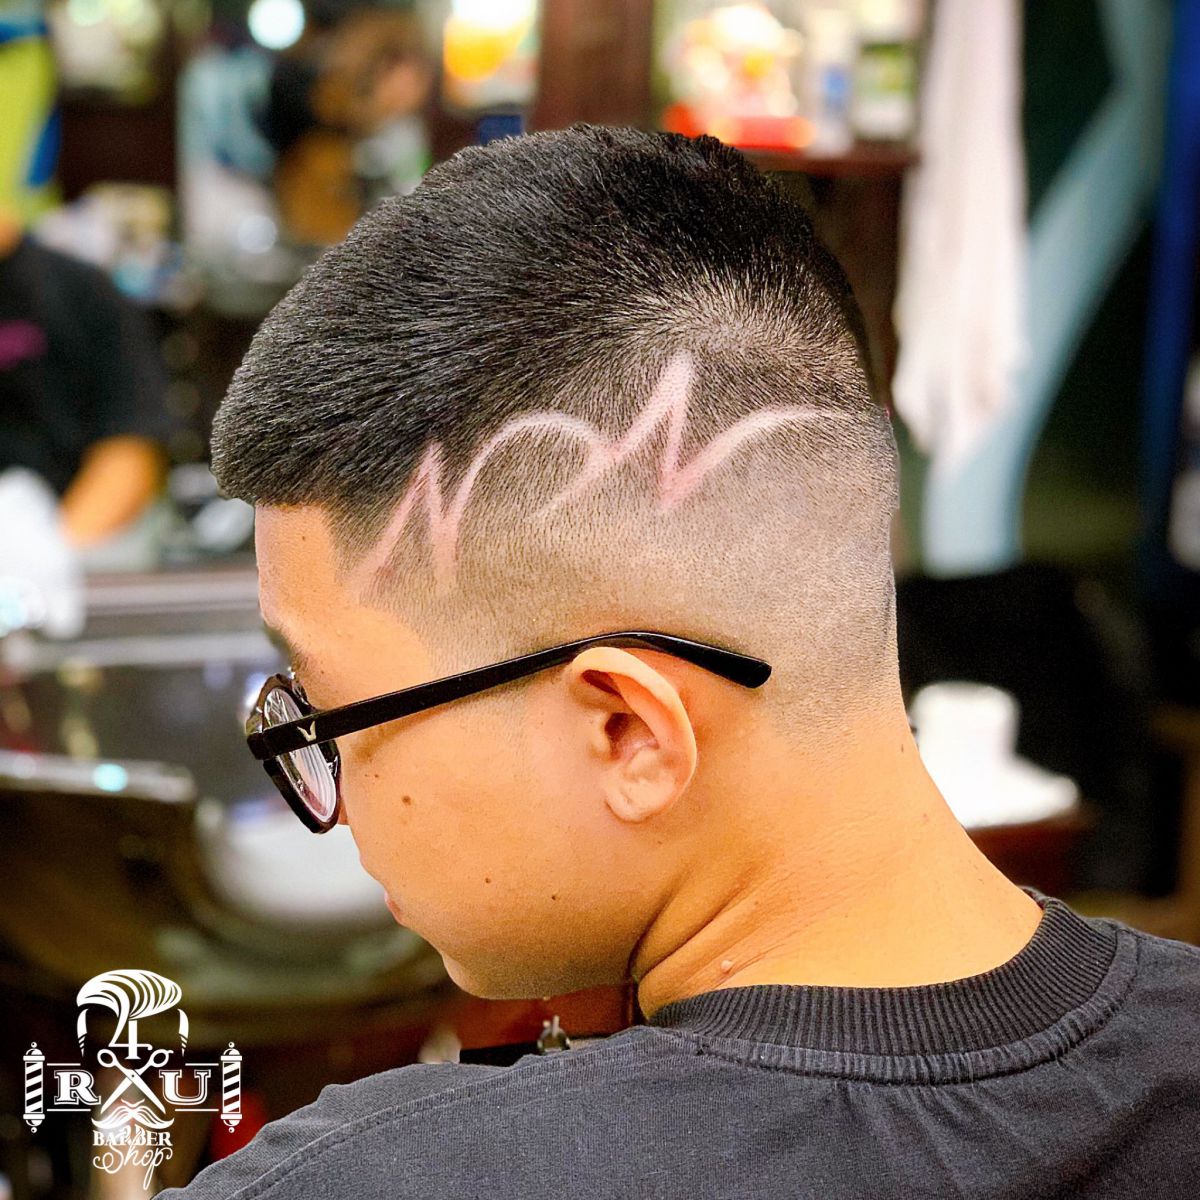 4Rau Barber Shop - Cutclub & Pomade Saigon